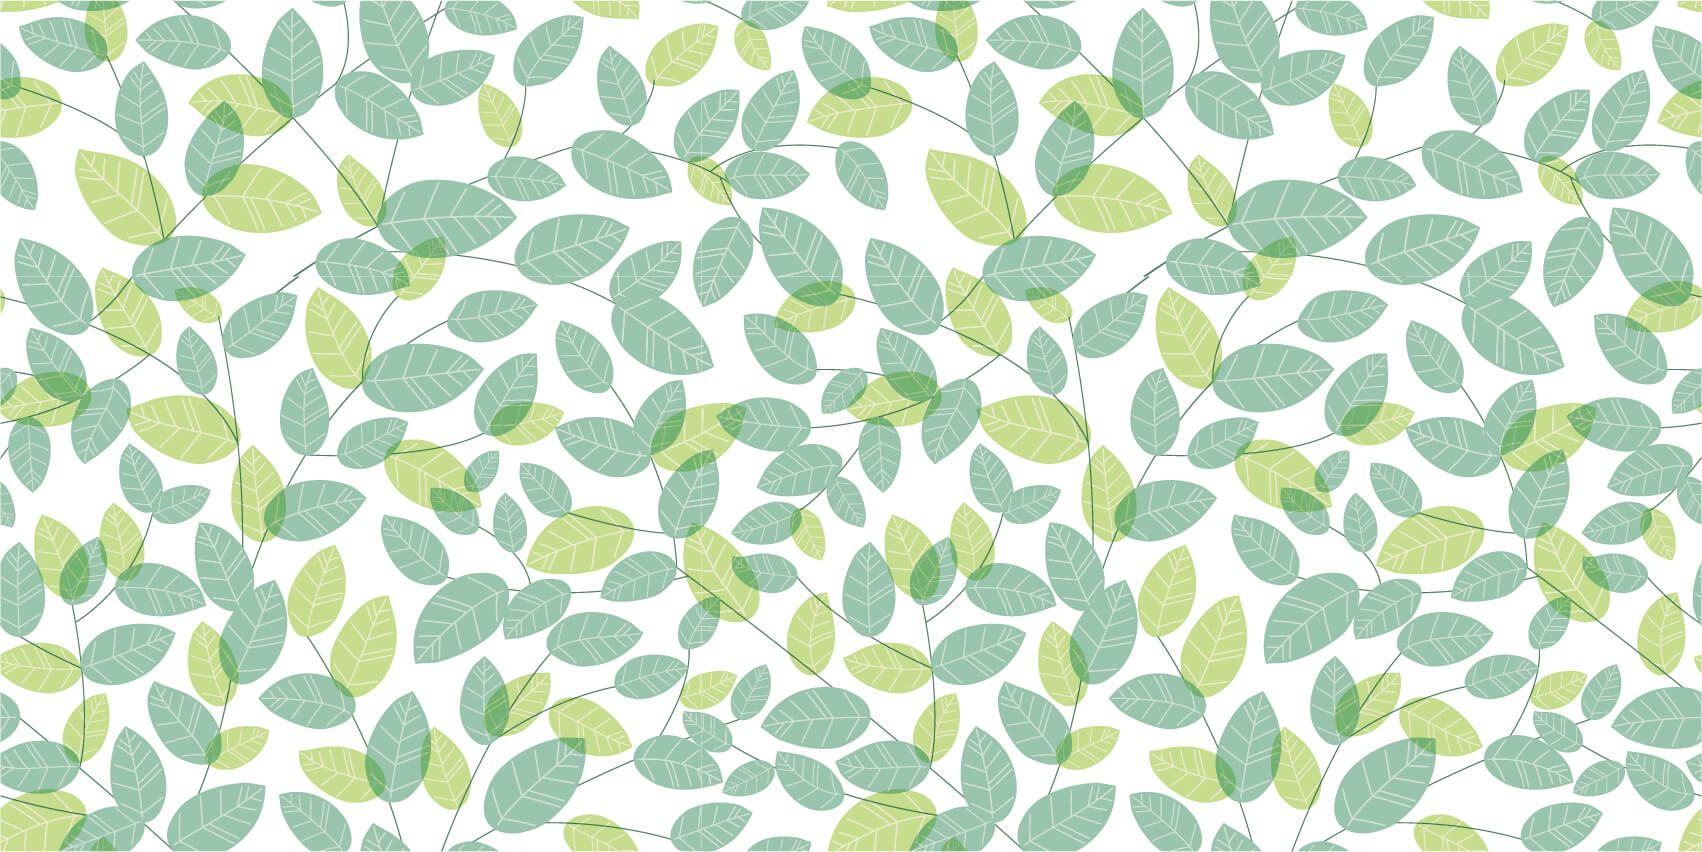 Leaves - Bladeren patroon - Hobbykamer